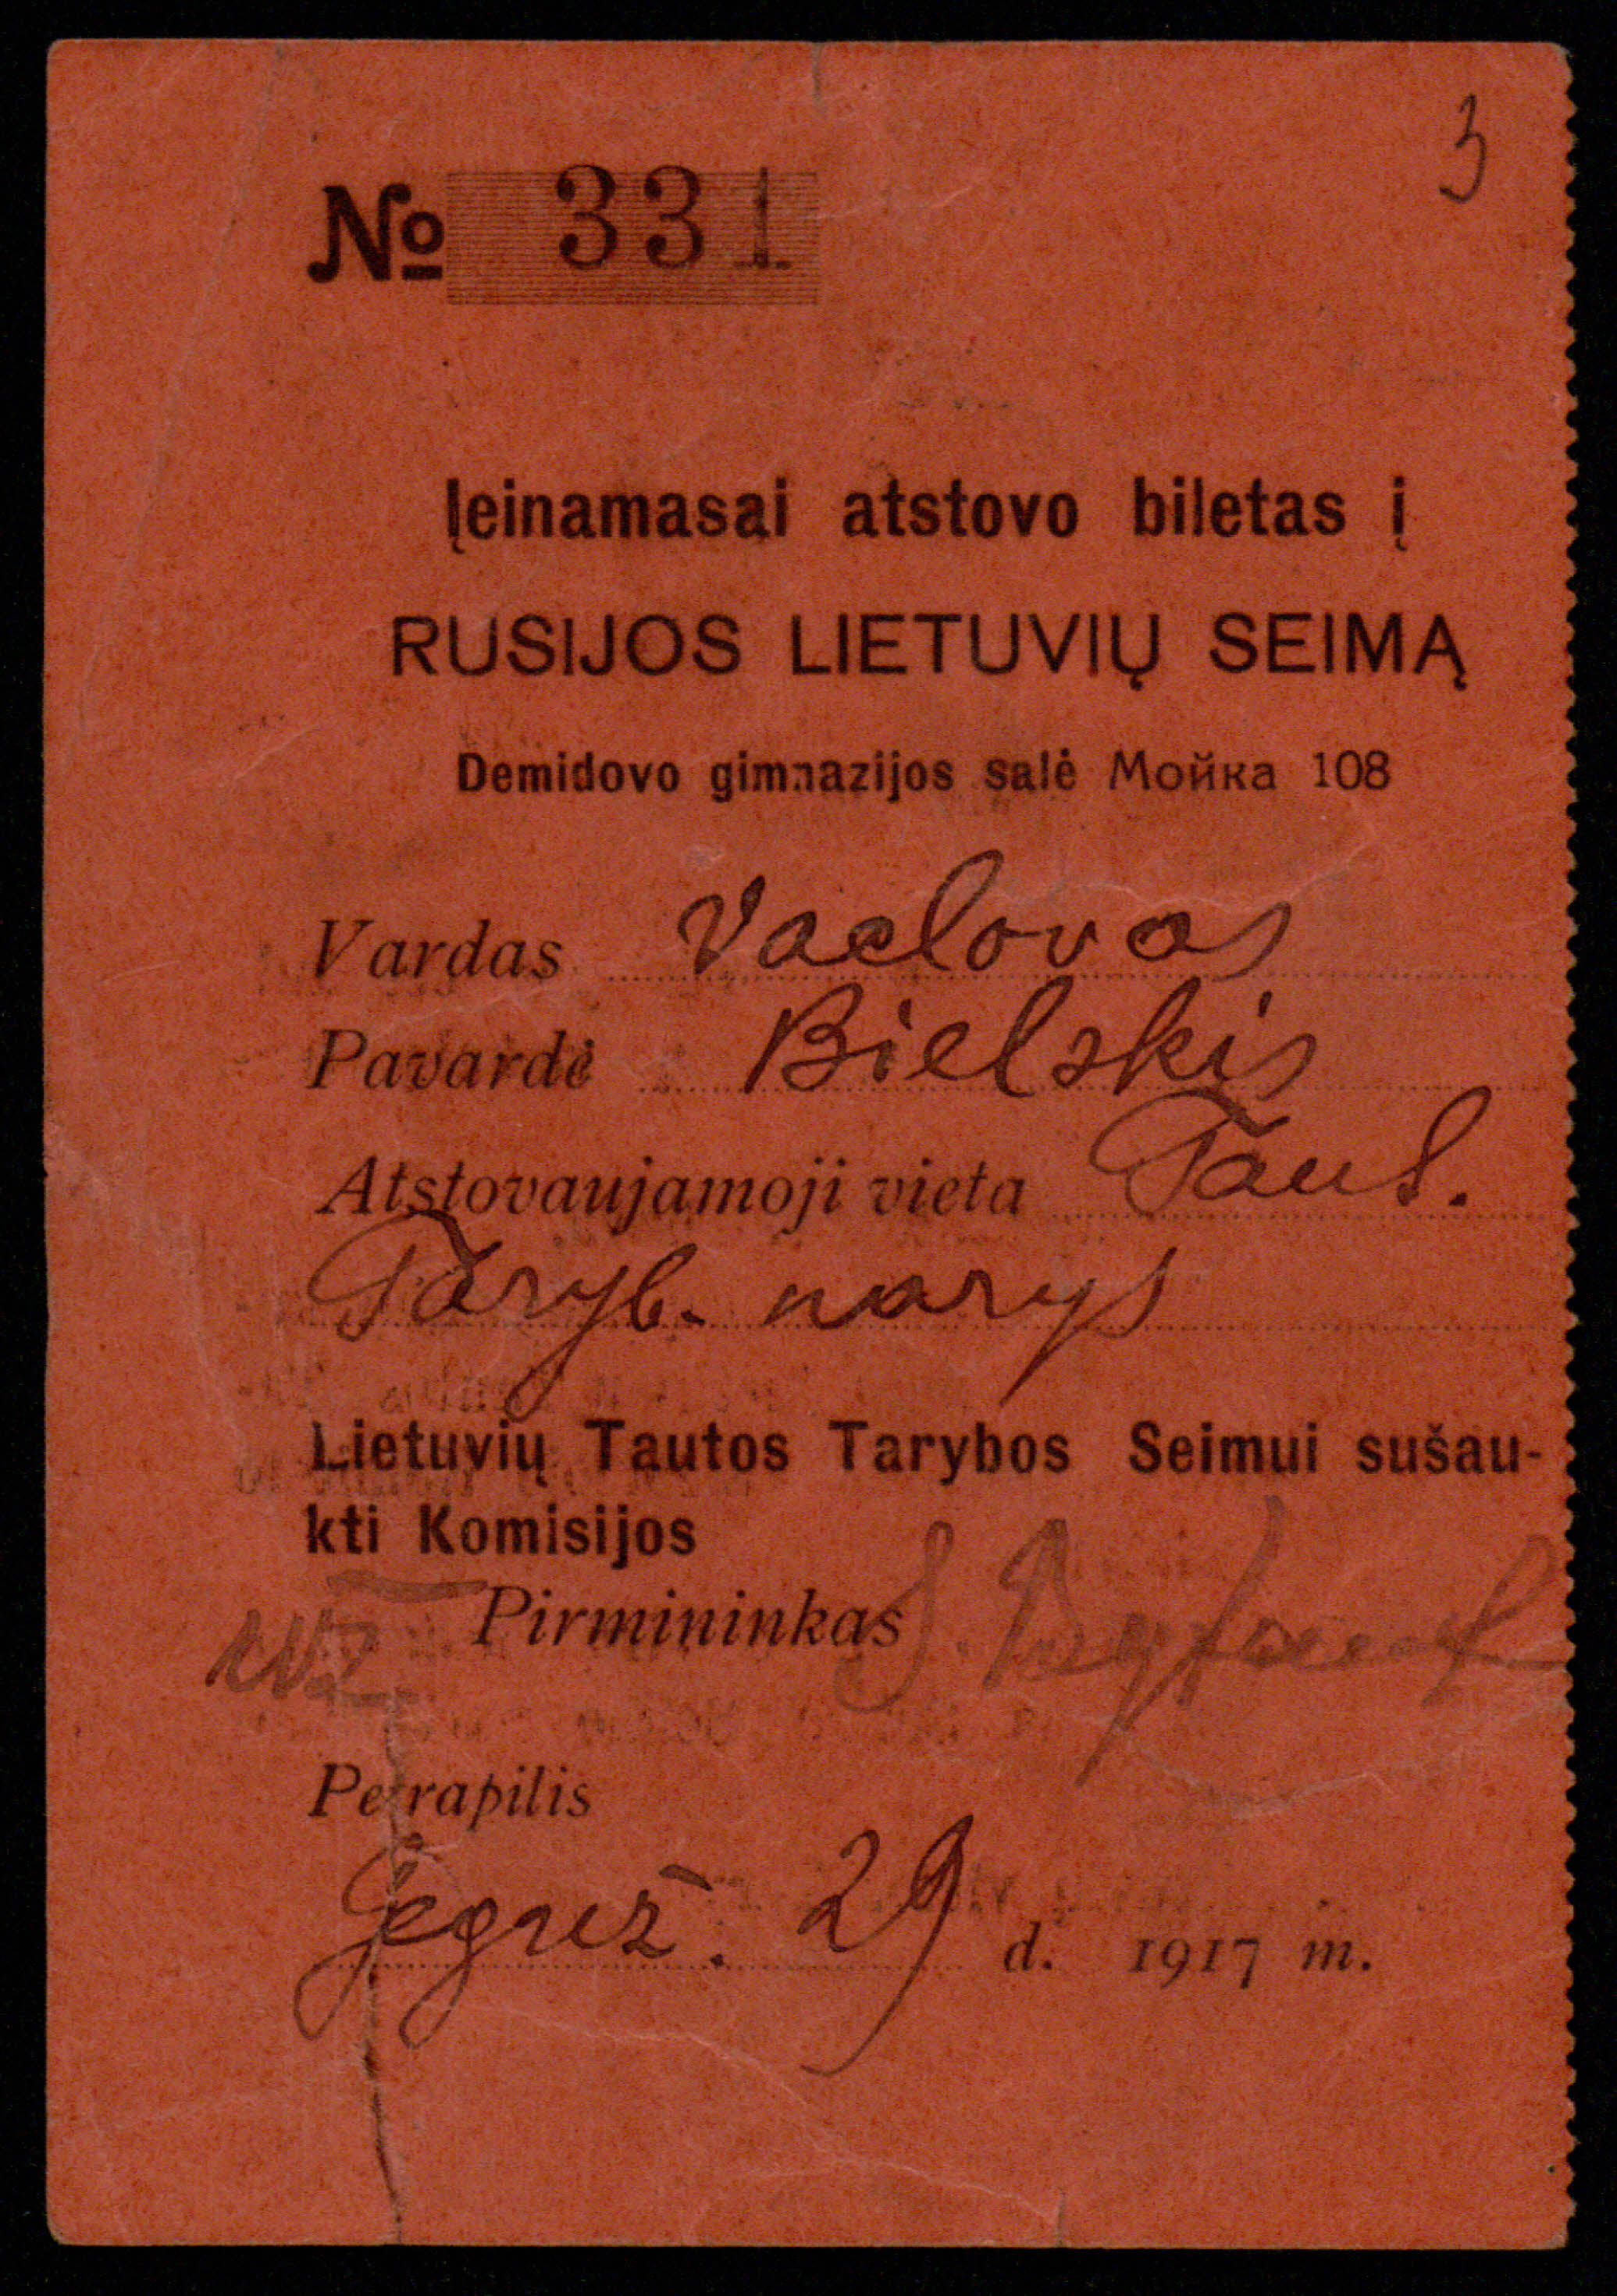 Įėjimo į Rusijos lietuvių seimą bilietas, išduotas Vaclovui Bielskiui. Petrapilis (Petrogradas), 1917 05 29. LMAVB RS, F237-126, lap. 3r.